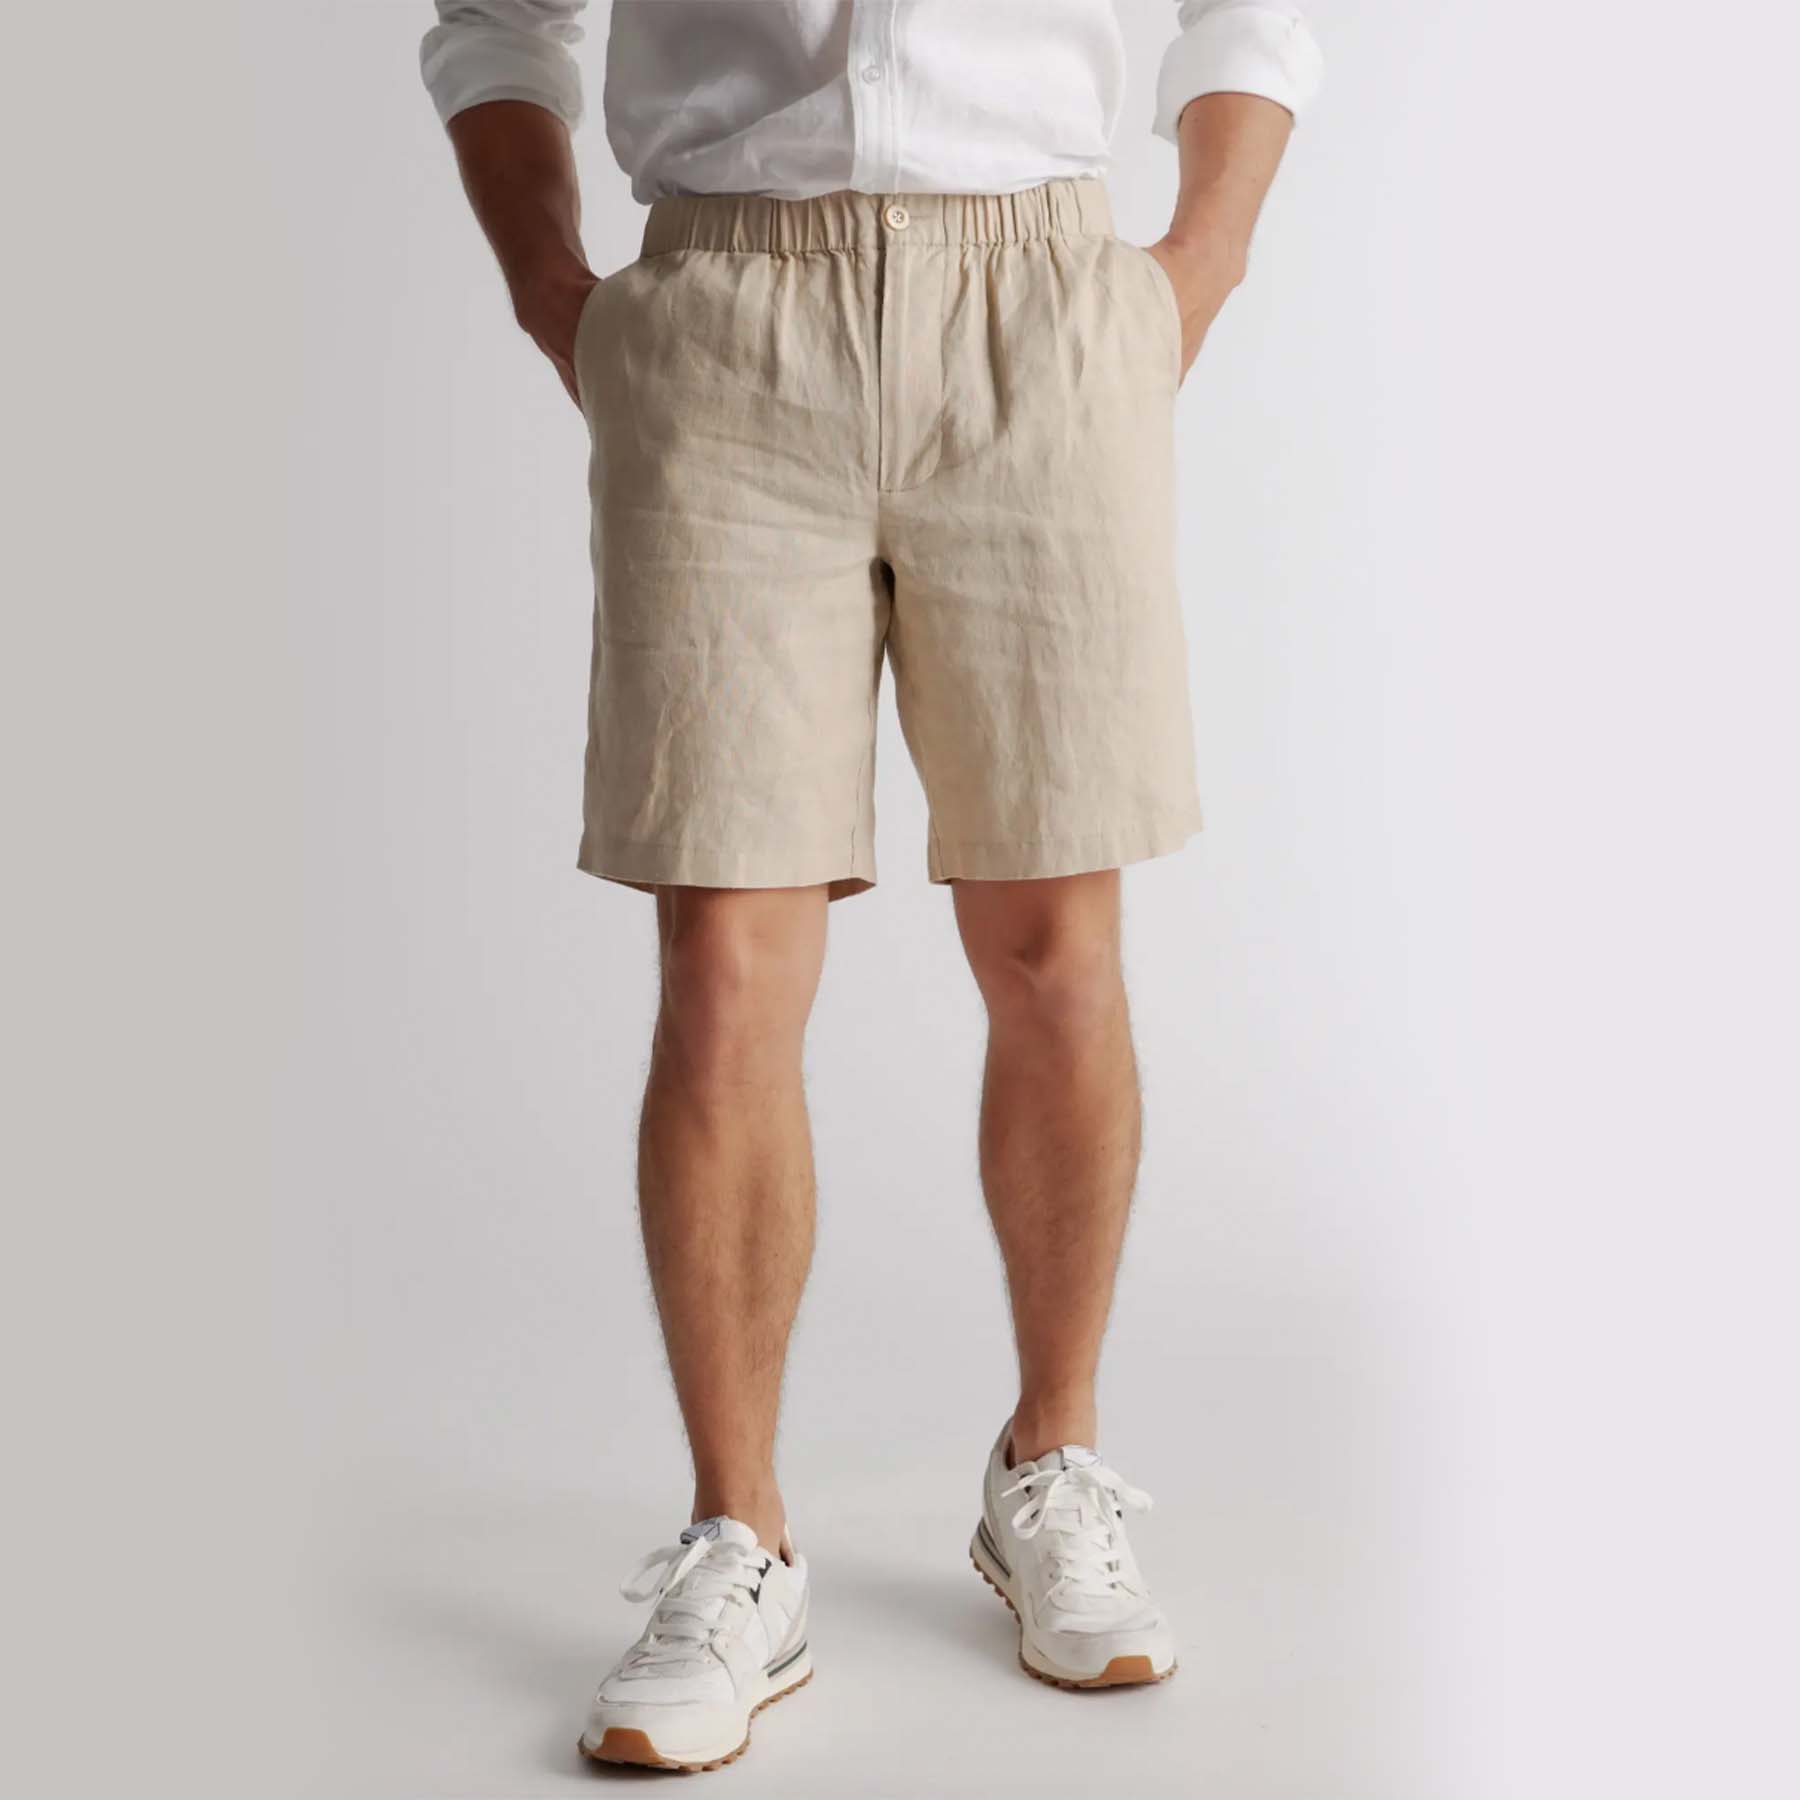 Best Short Shorts for Men - AskMen